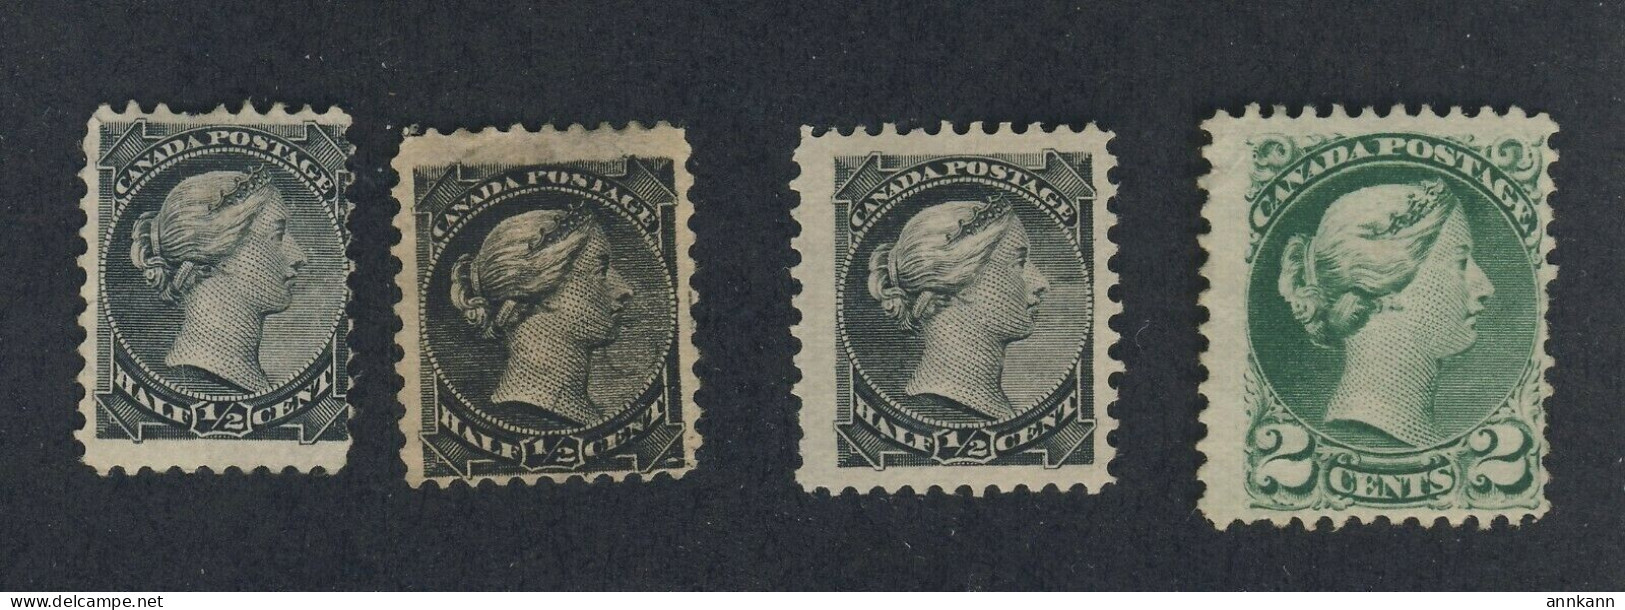 4x Canada Small Queen MNG Stamps 3x #34-1/2c F F/VF VF #36-2c Fine GV = $100.00 - Nuovi